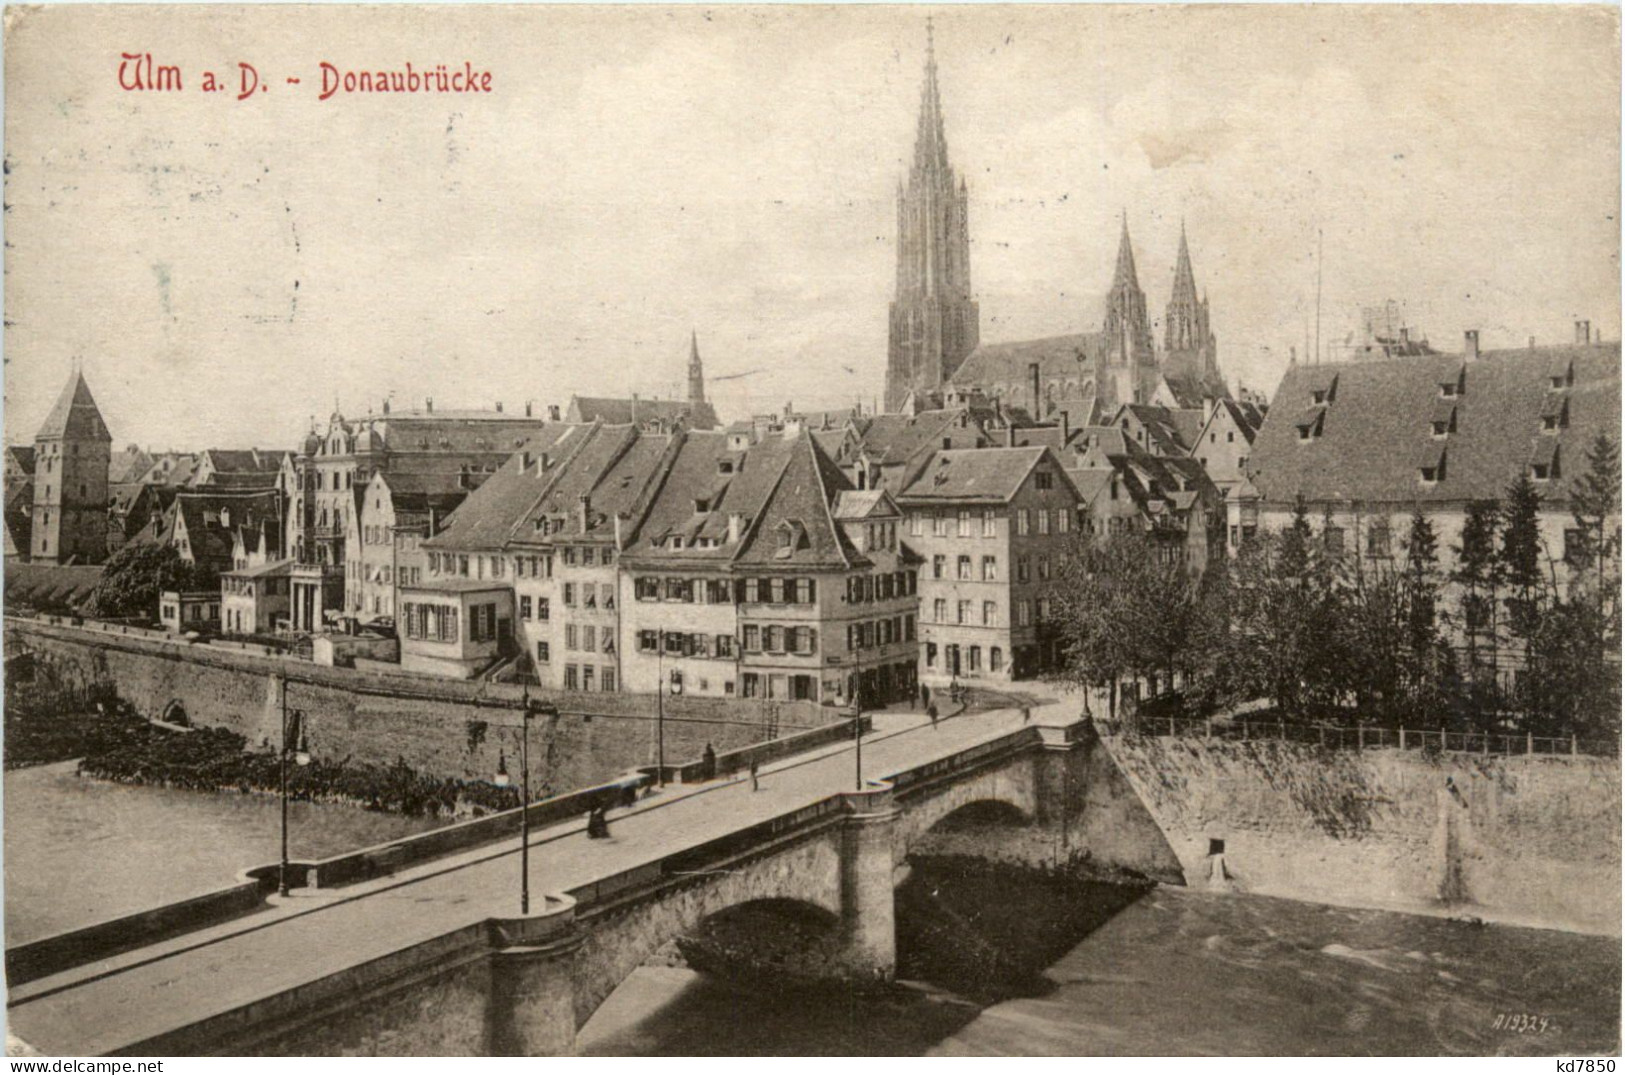 Ulm, Donaubrücke - Ulm